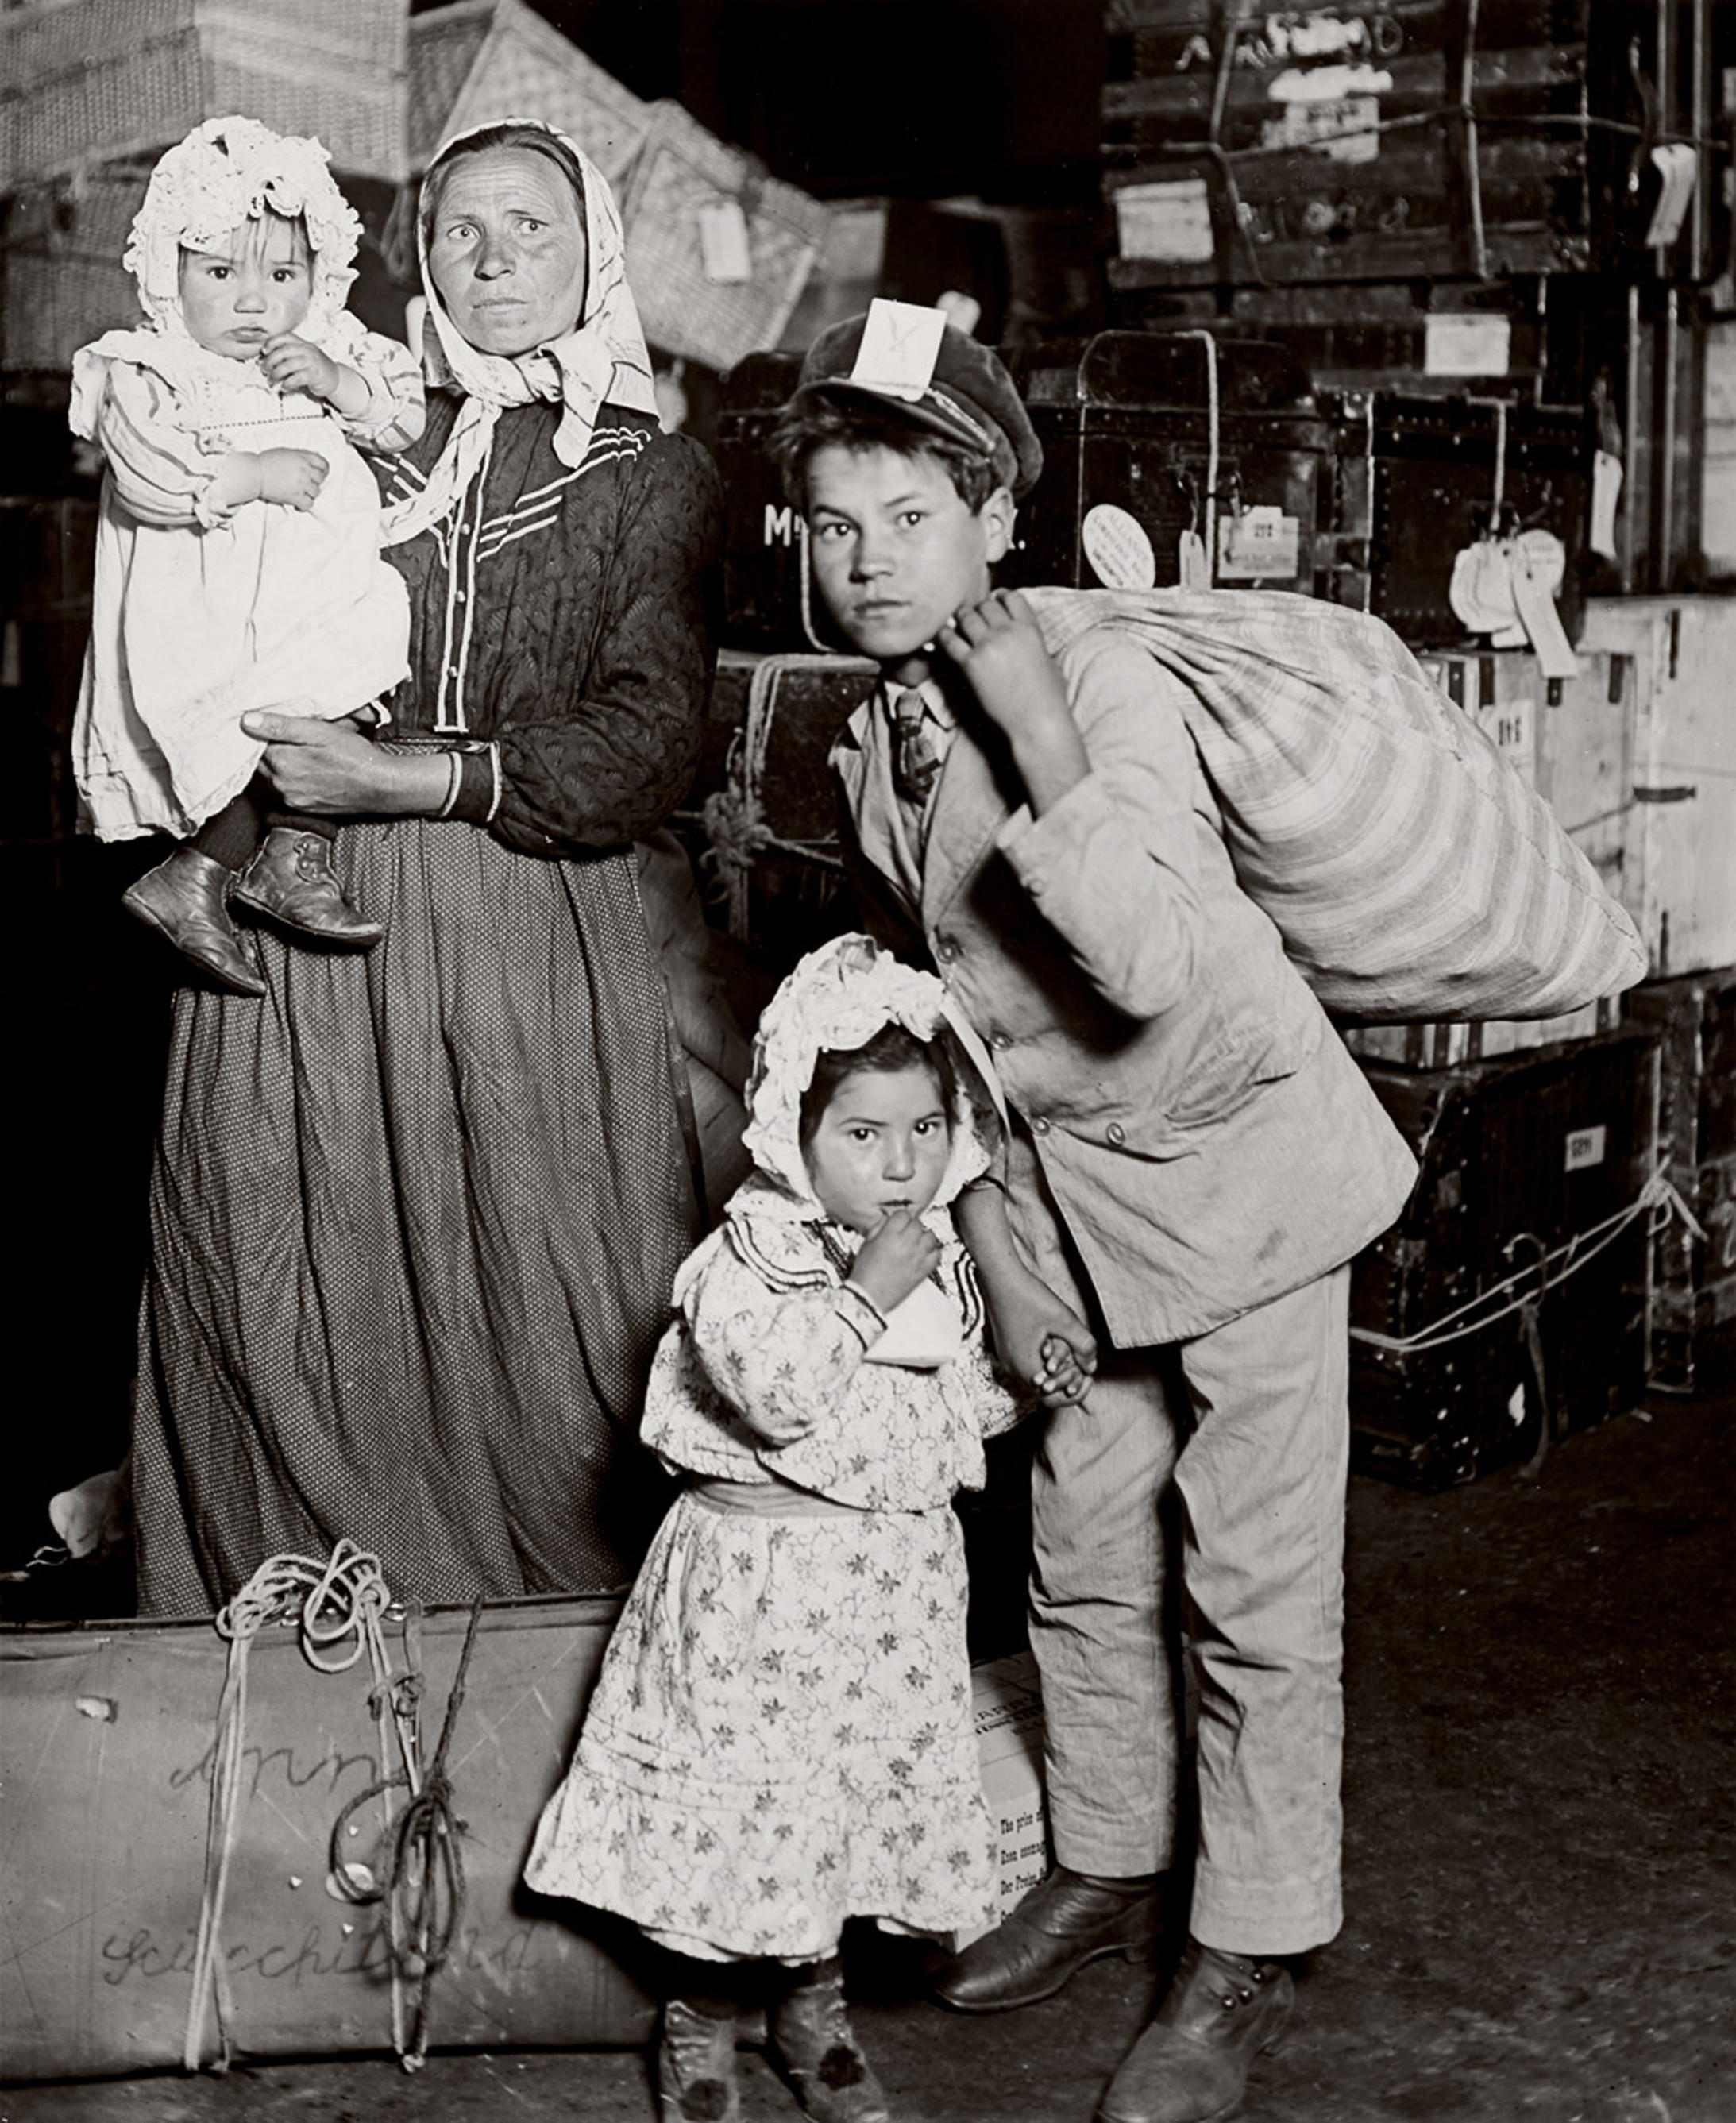 Lewis Hine,
Italian family looking for lost baggage, Ellis Island (italienische Familie auf der Suche nach verlorenem Gepäck), 1905
Silbergelatine-Abzug, 33.4 x 27.2 cm
© Sammlung des George Eastman House, Rochester